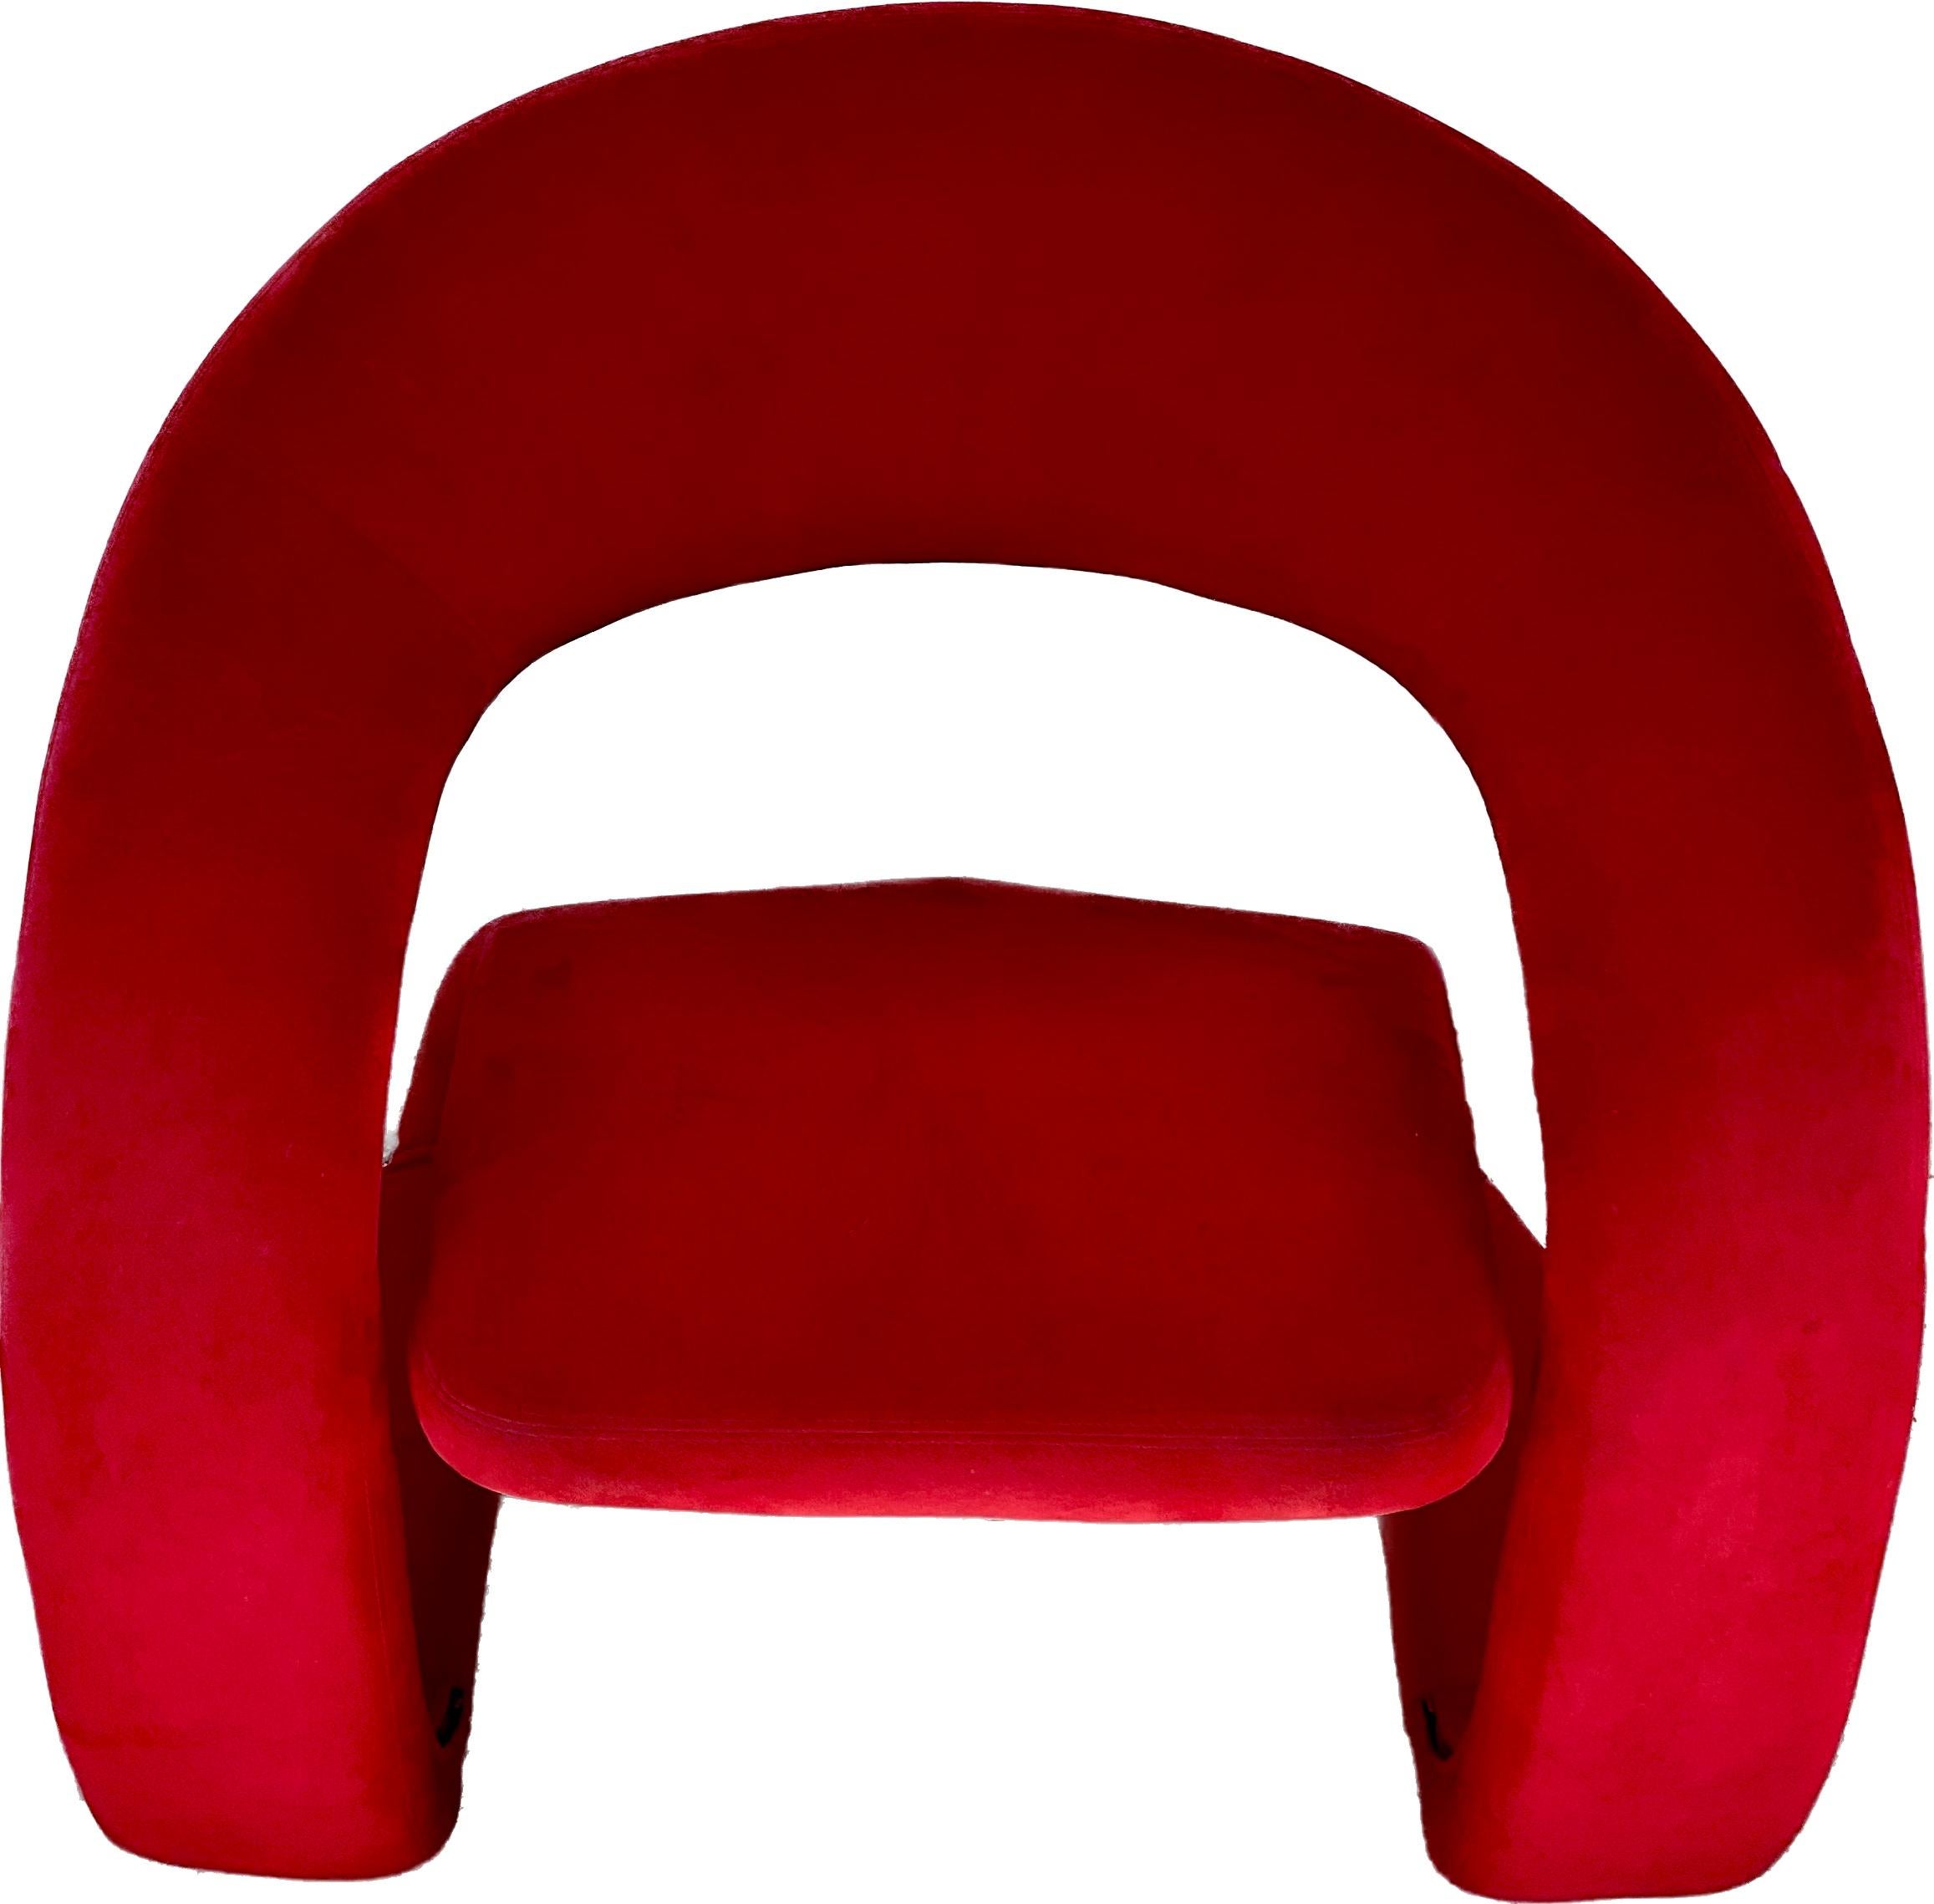 Chaise longue très cool et confortable fabriquée par Jaymar. Cette chaise présente un design sculptural unique et incurvé et est recouverte d'un revêtement en micro-daim rouge d'origine.